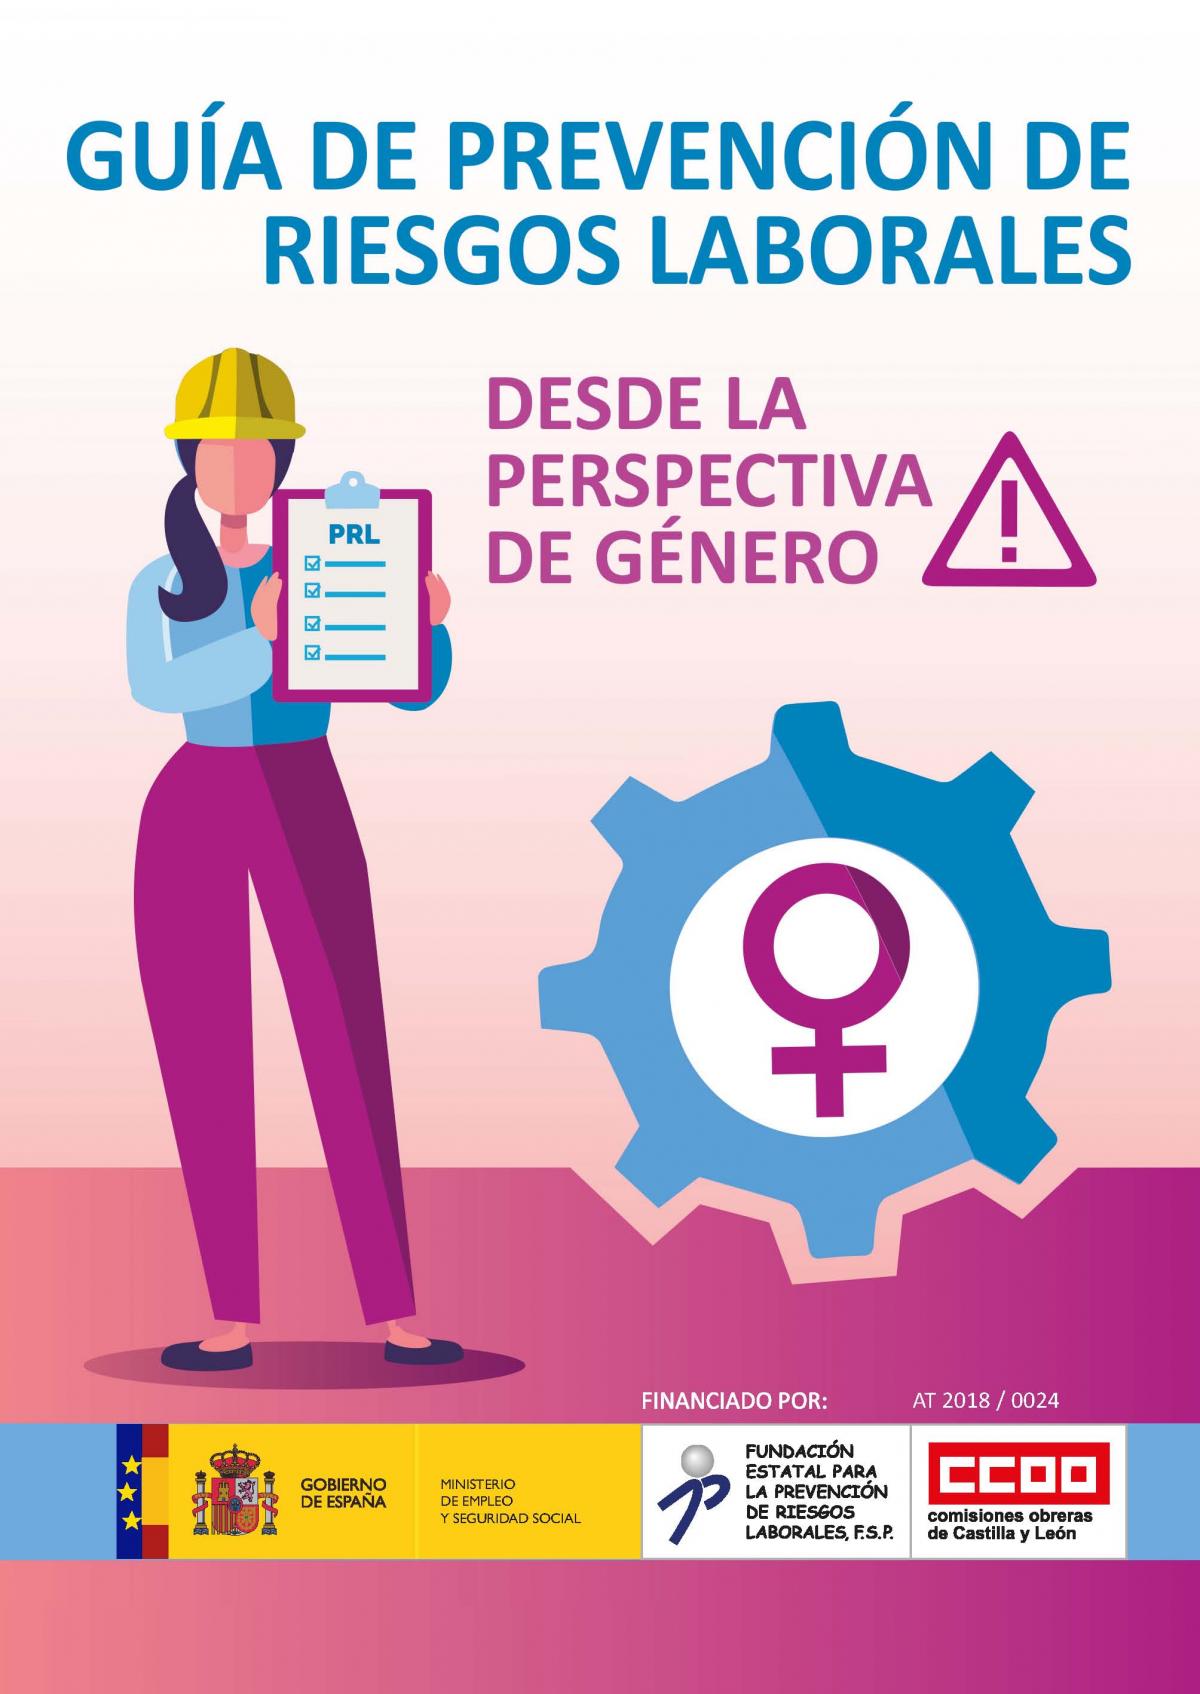 Guía de Prevención de Riesgos Laborales desde la Perspectiva de Género.